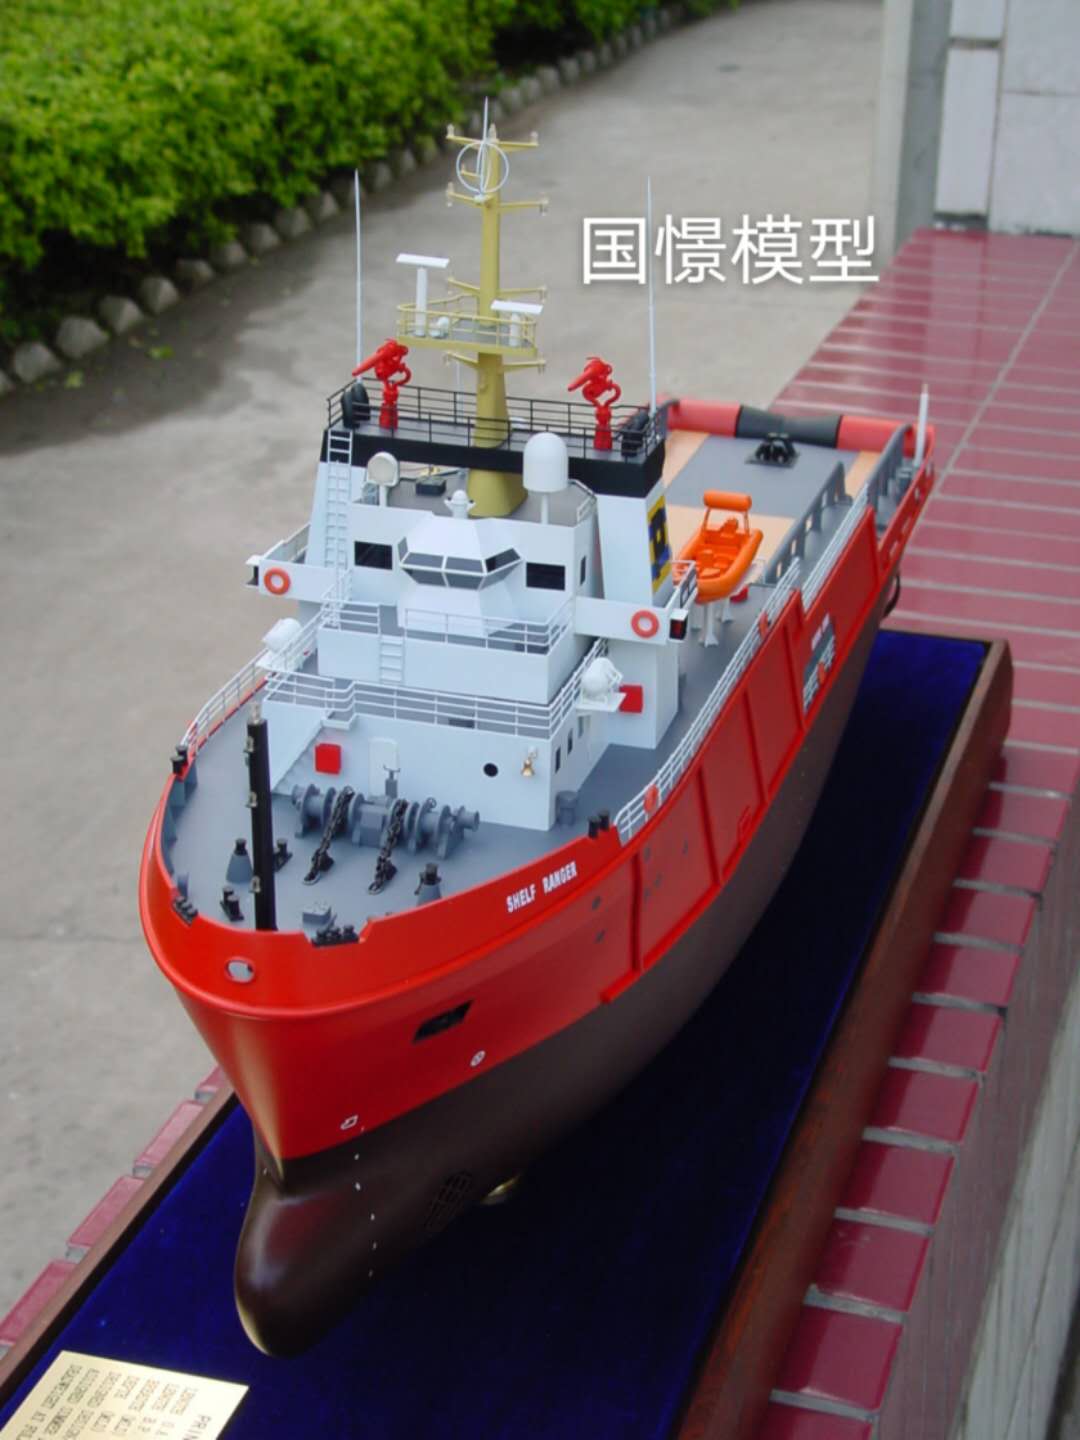 察隅县船舶模型